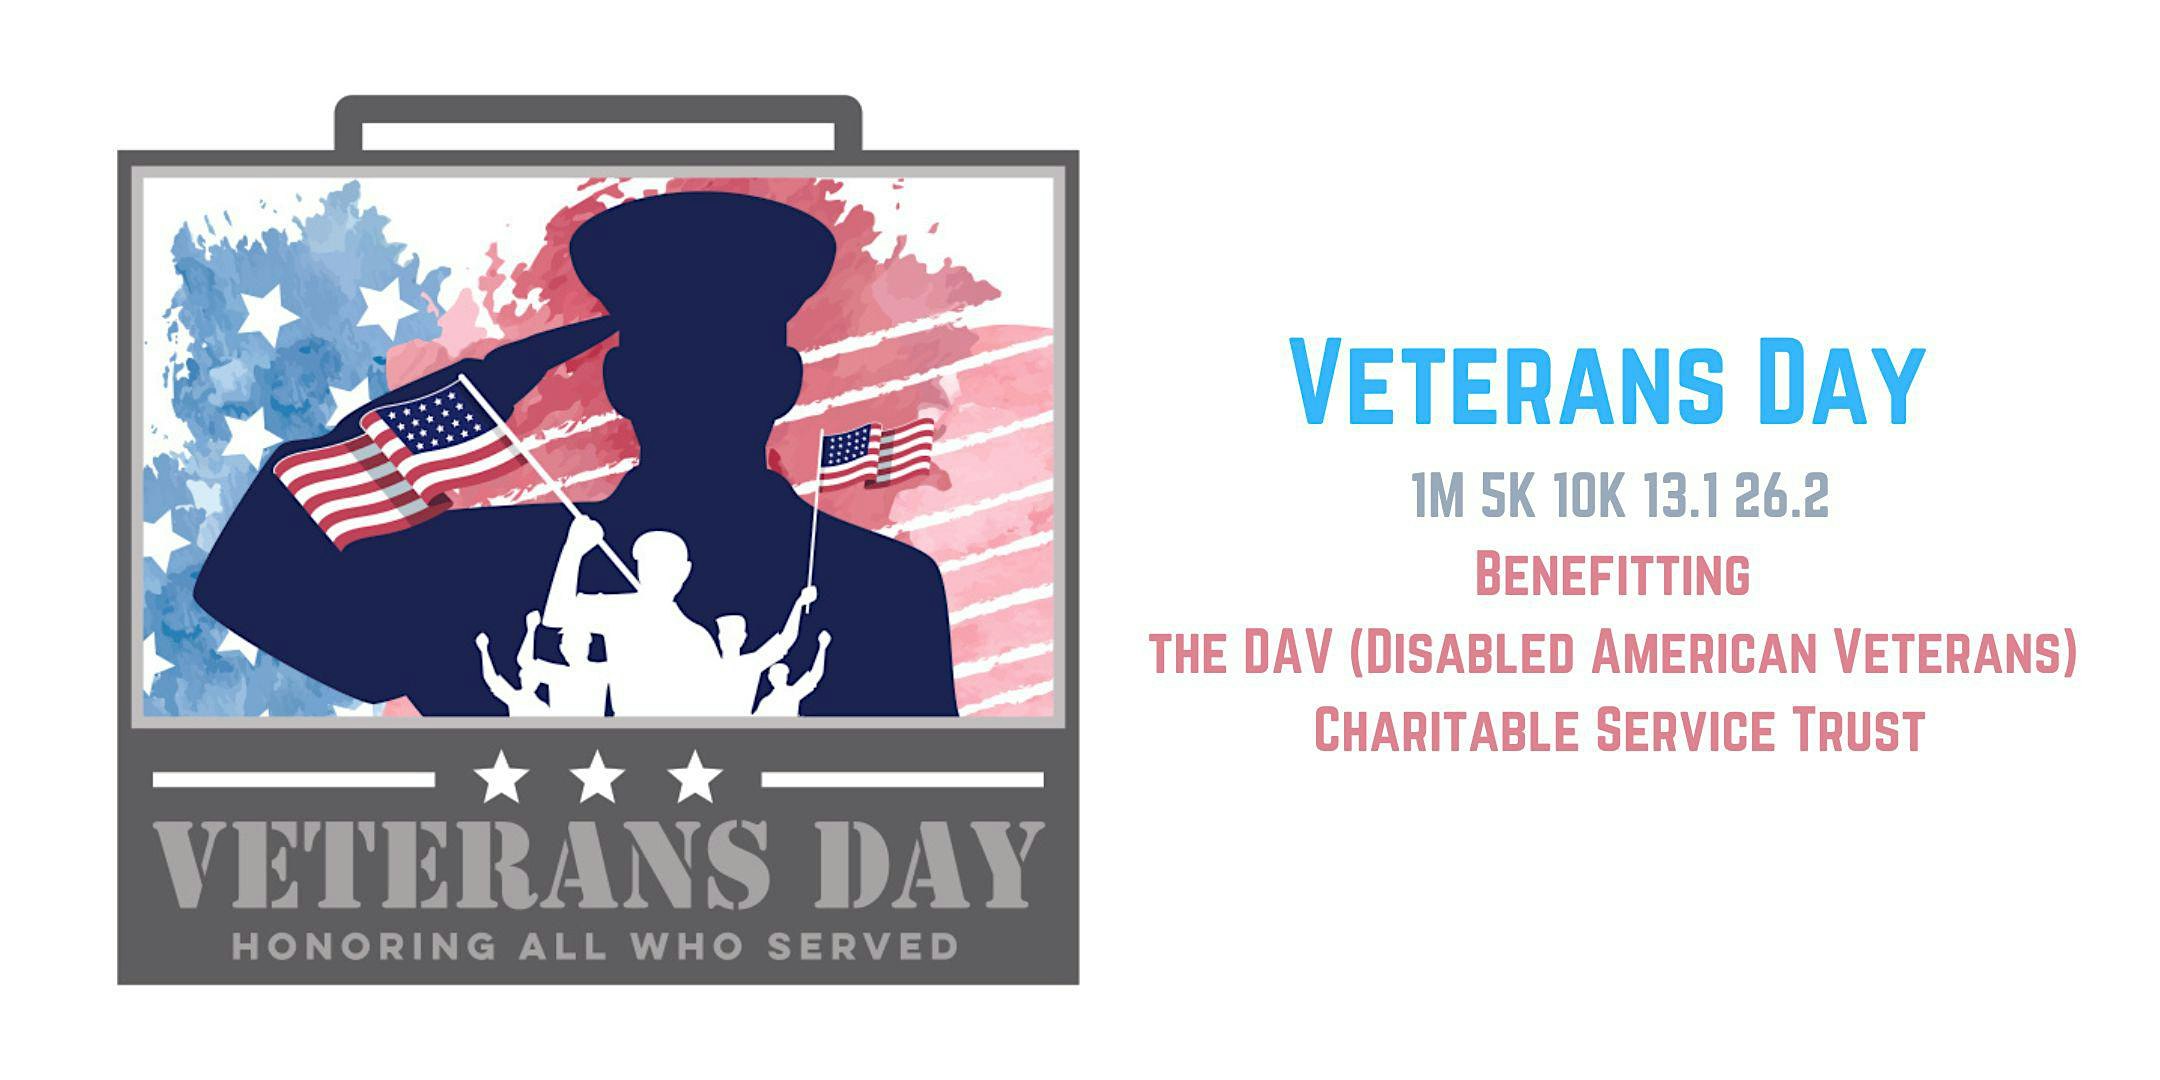 Veterans Day 1M 5K 10K 13.1 26.2-Save $2